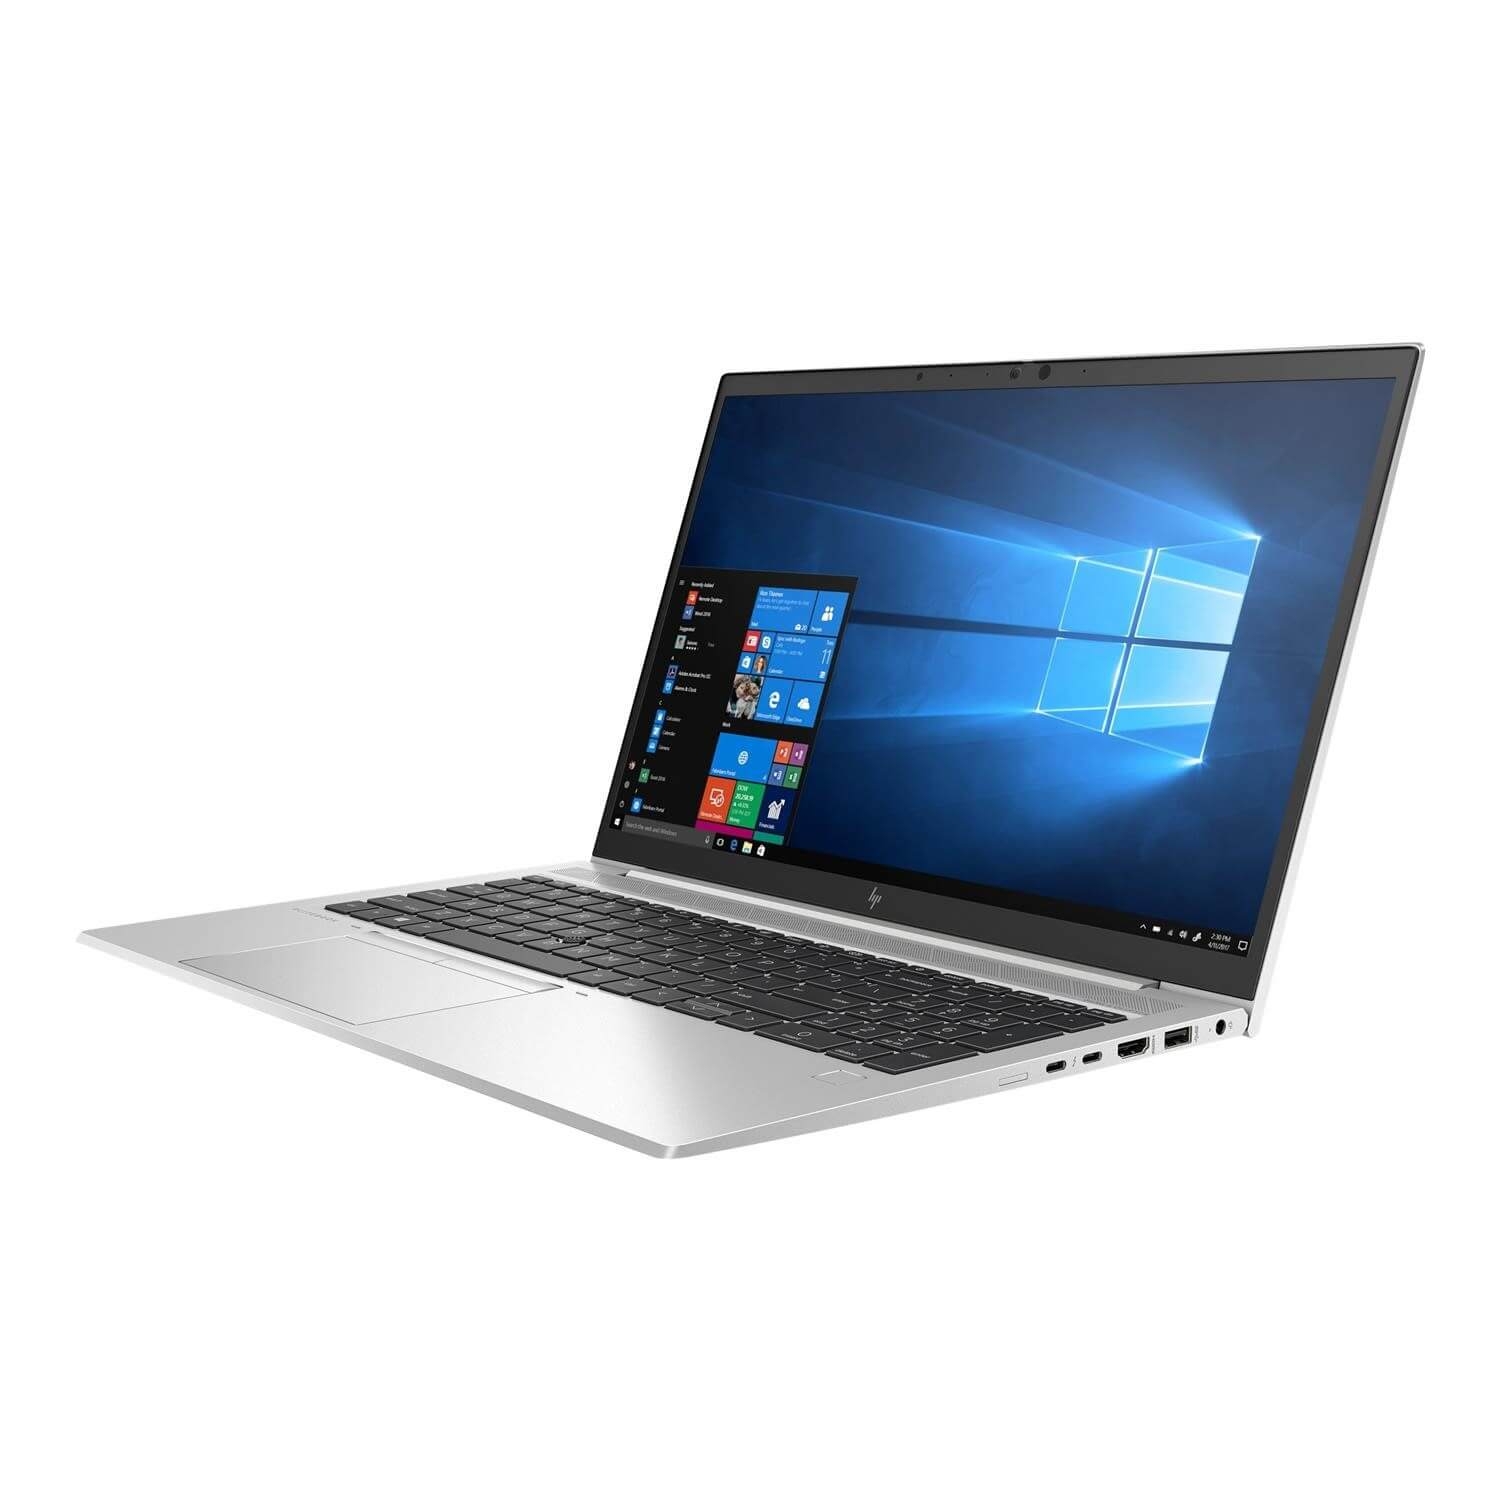 Laptop HP Elitebook 850 G7 i5-10210U, RAM 8GB, SSD 256GB, 15.6 inch FHD